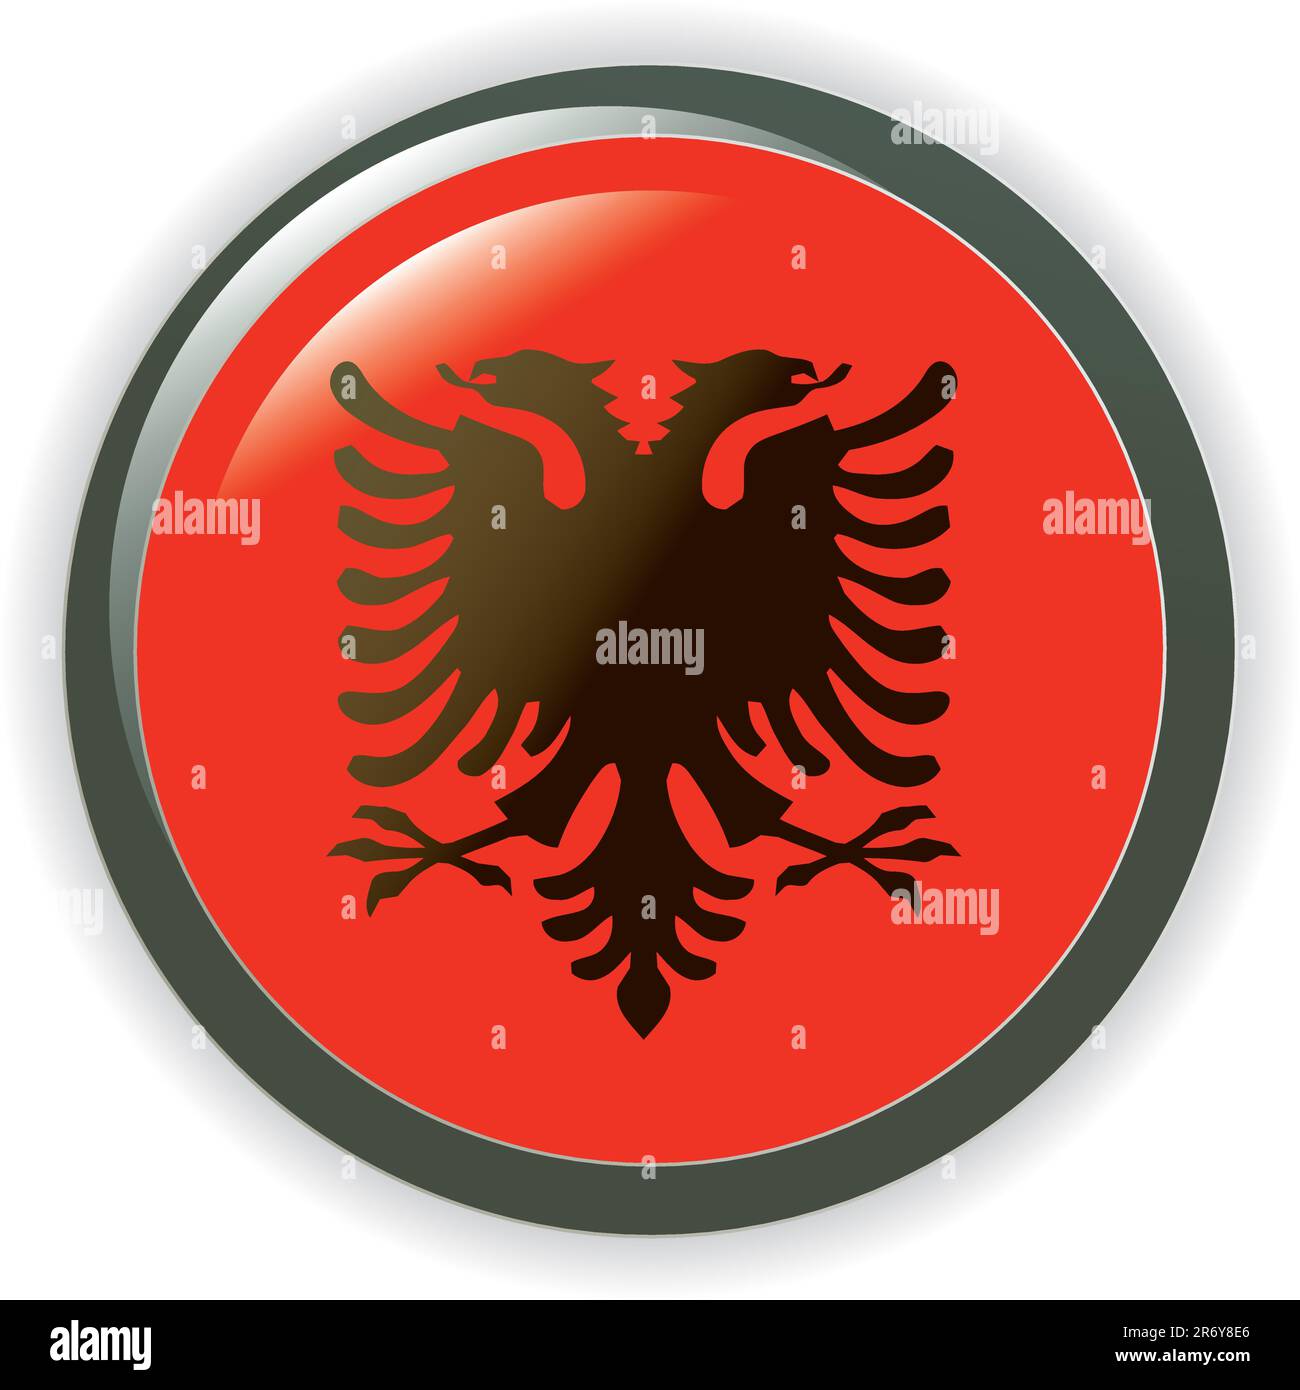 boutons de toile brillante vector avec drapeaux de pays européens Illustration de Vecteur